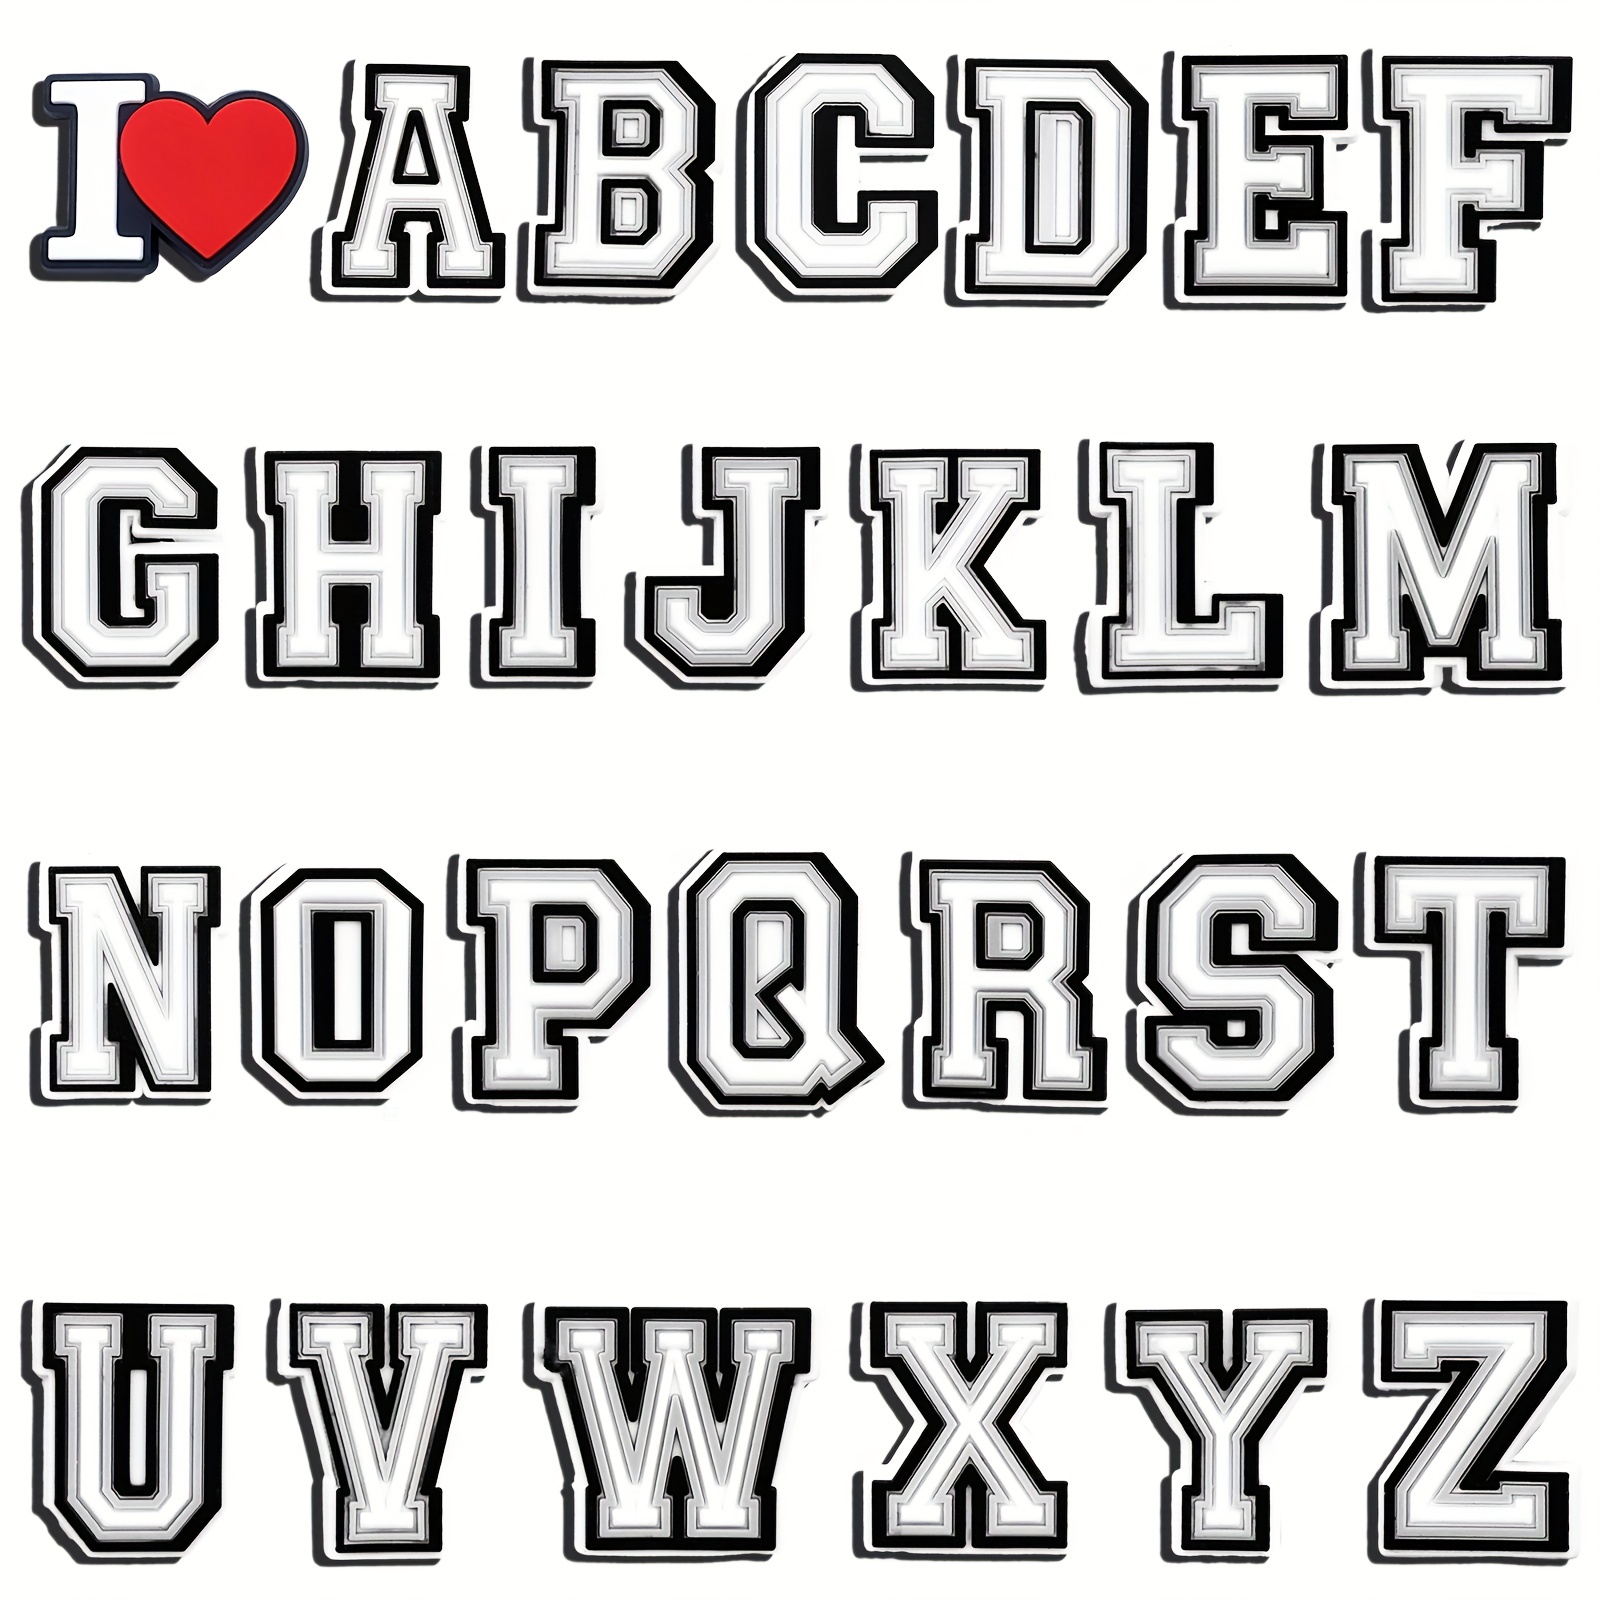 Ancient greek alphabet Design Kids Alphabet Letter Shoe Charms